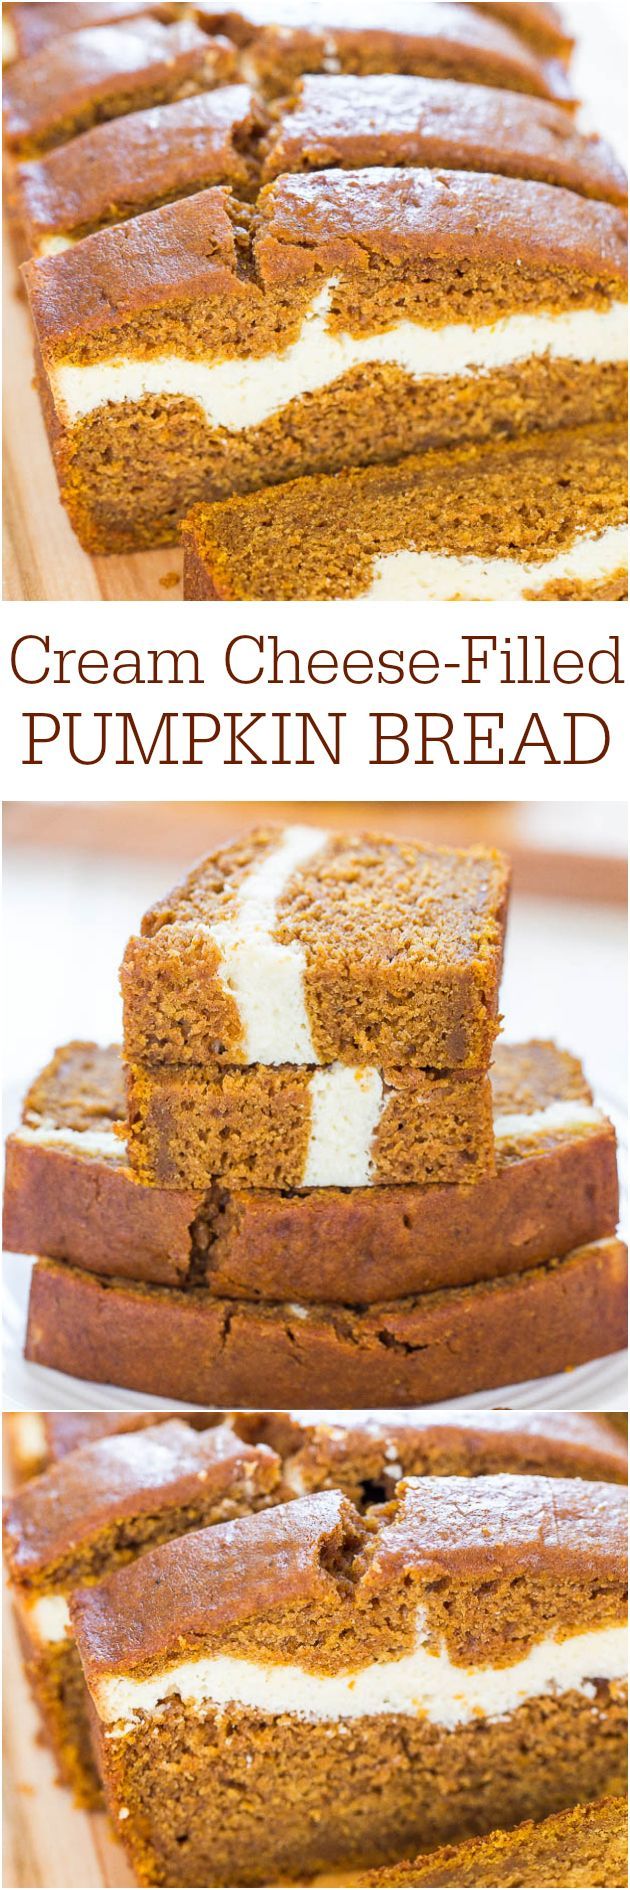 Cream cheese filled pumpkin bread     #recipe